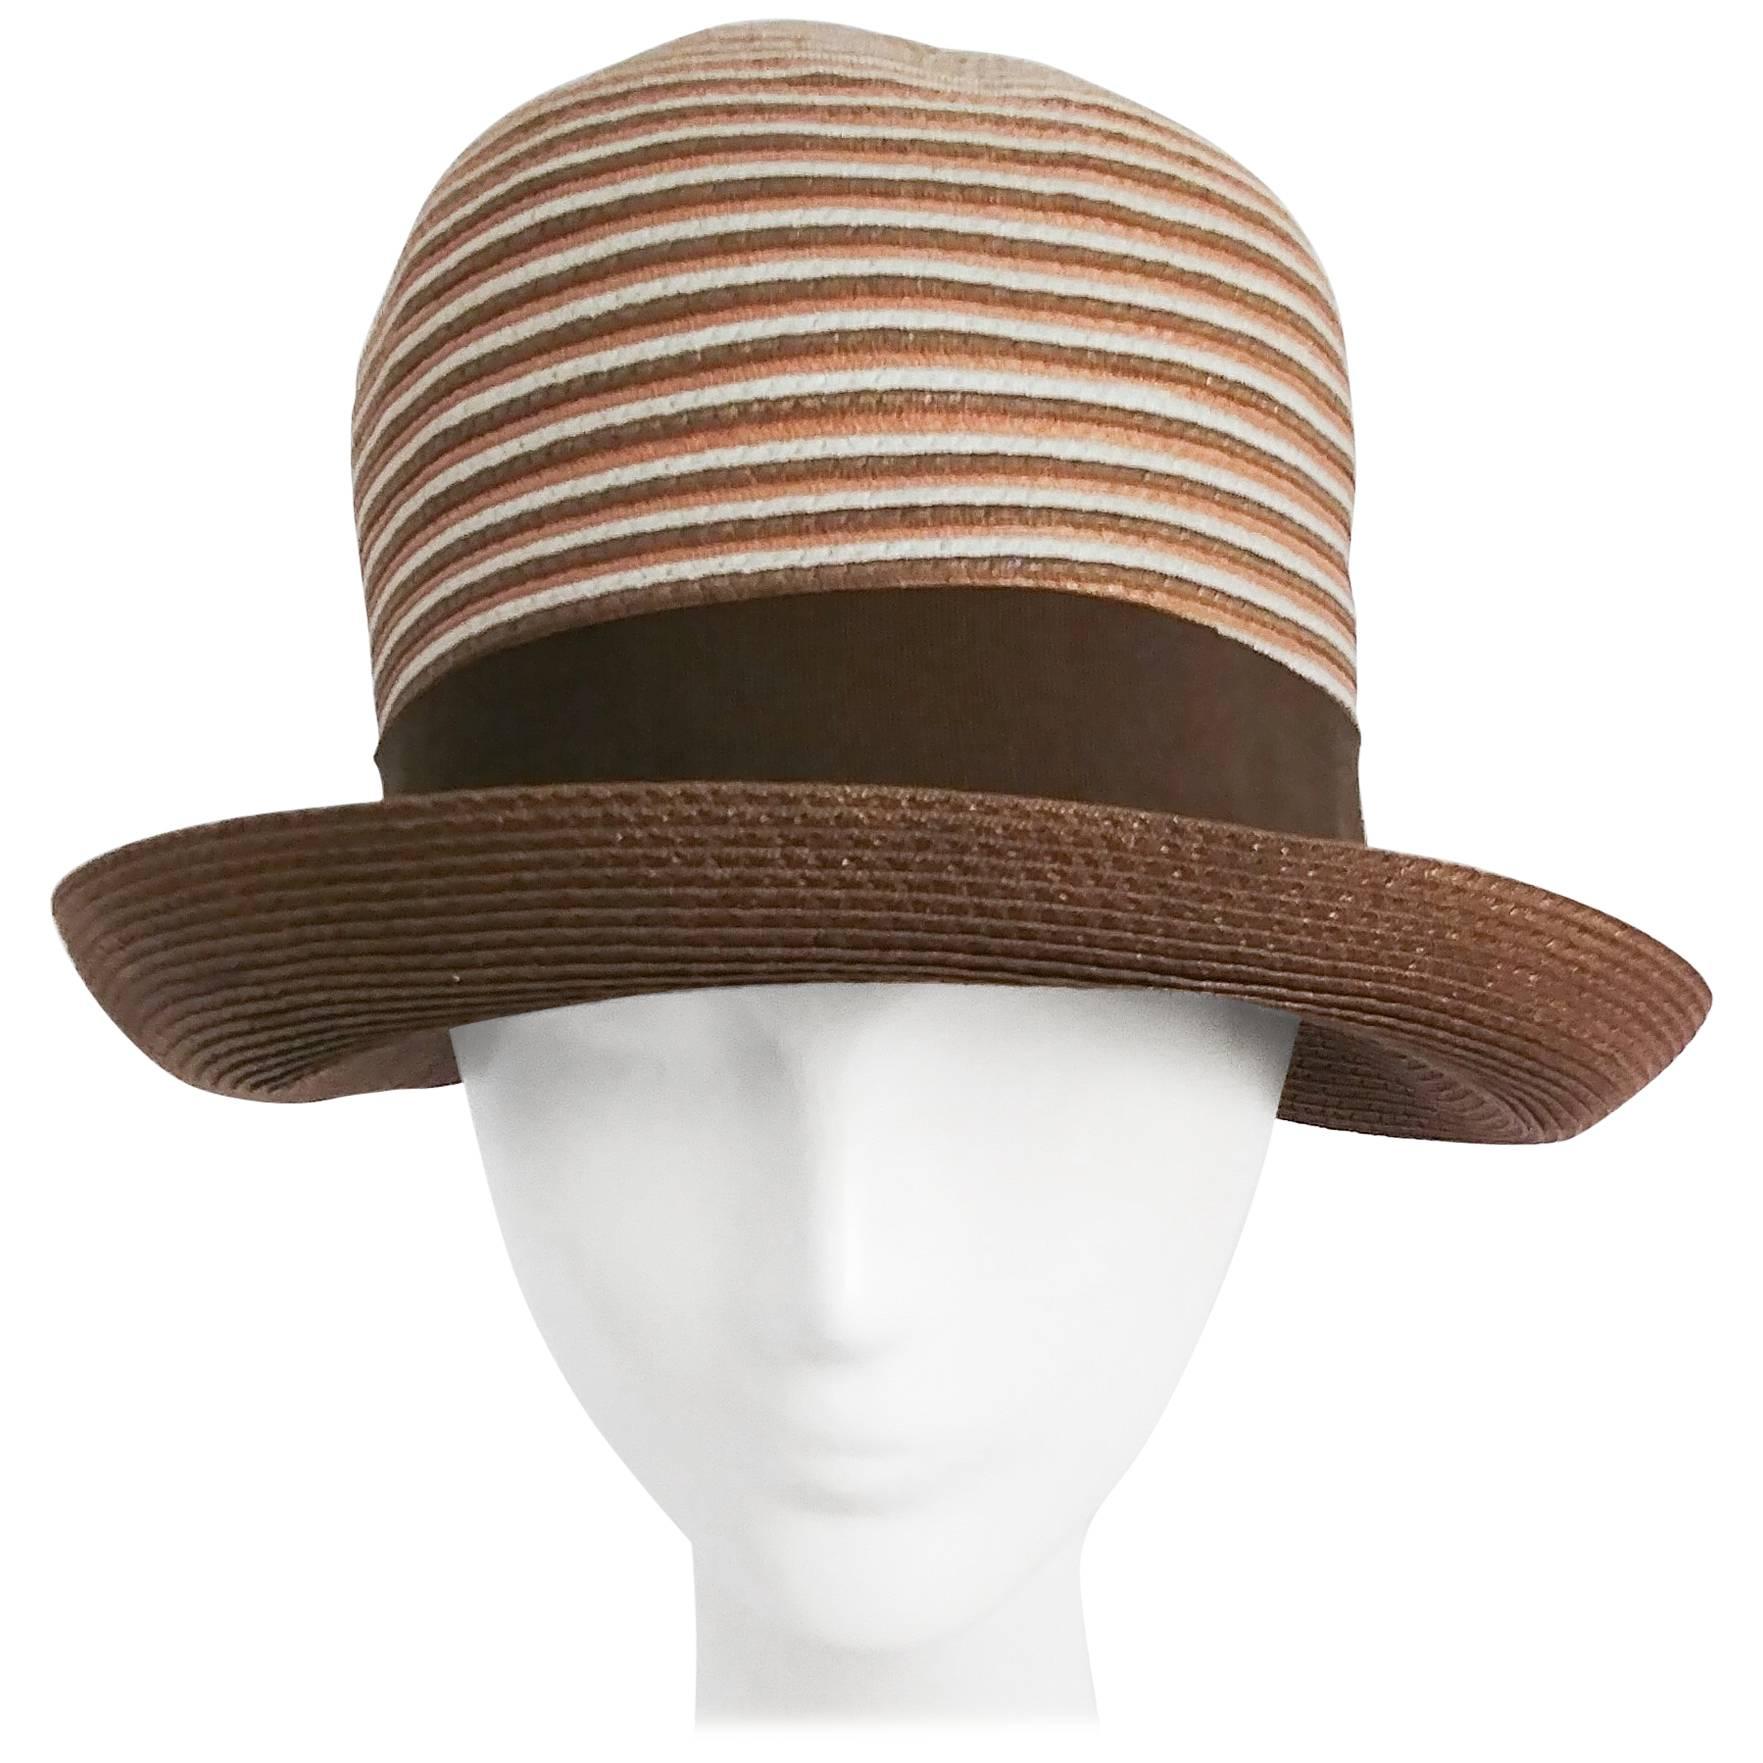 1960s Brown & White Stipe Woven Cloche Hat